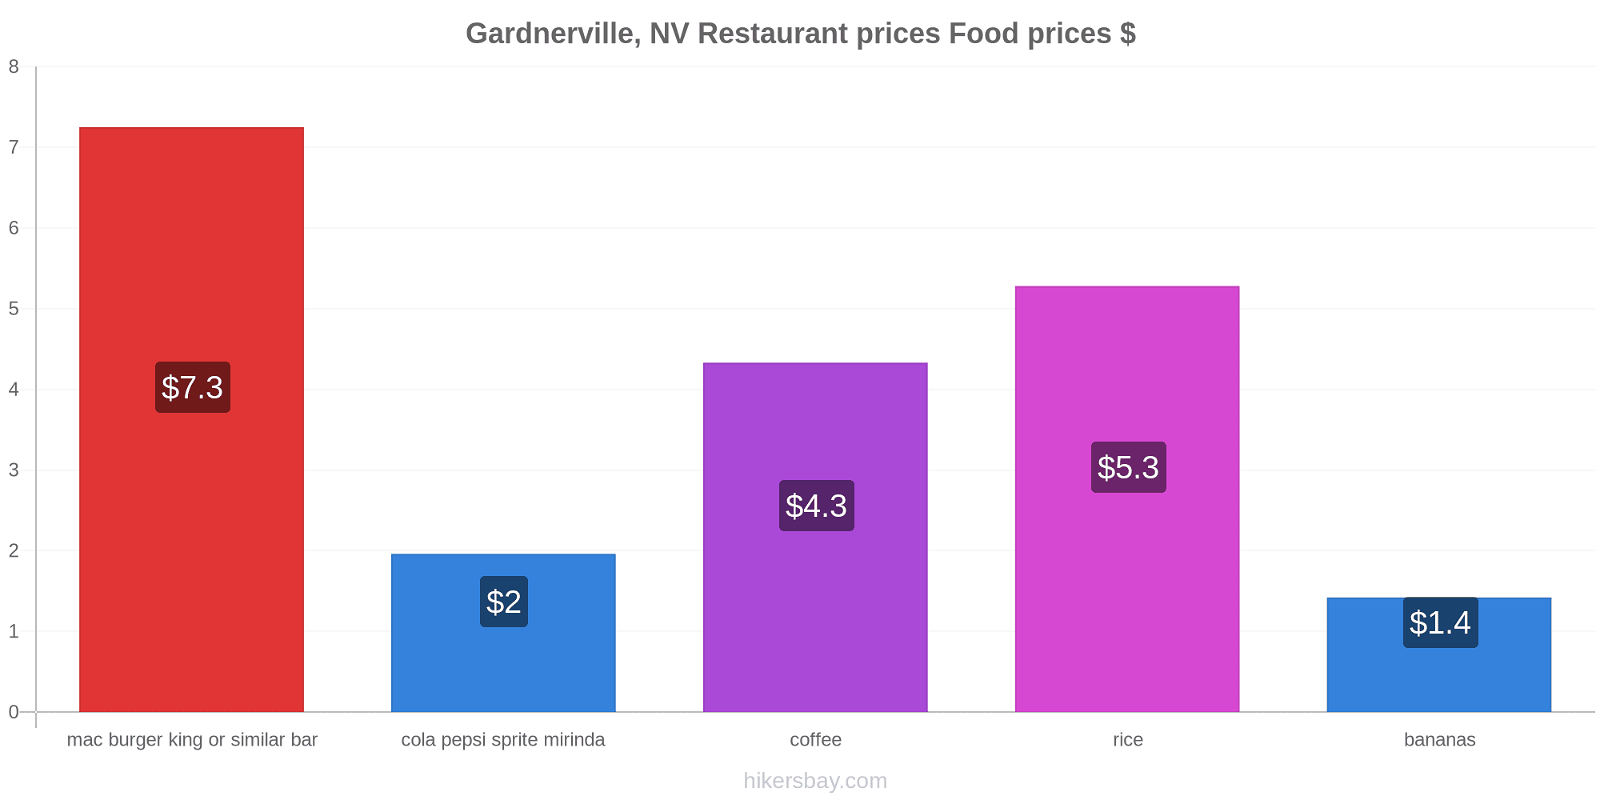 Gardnerville, NV price changes hikersbay.com